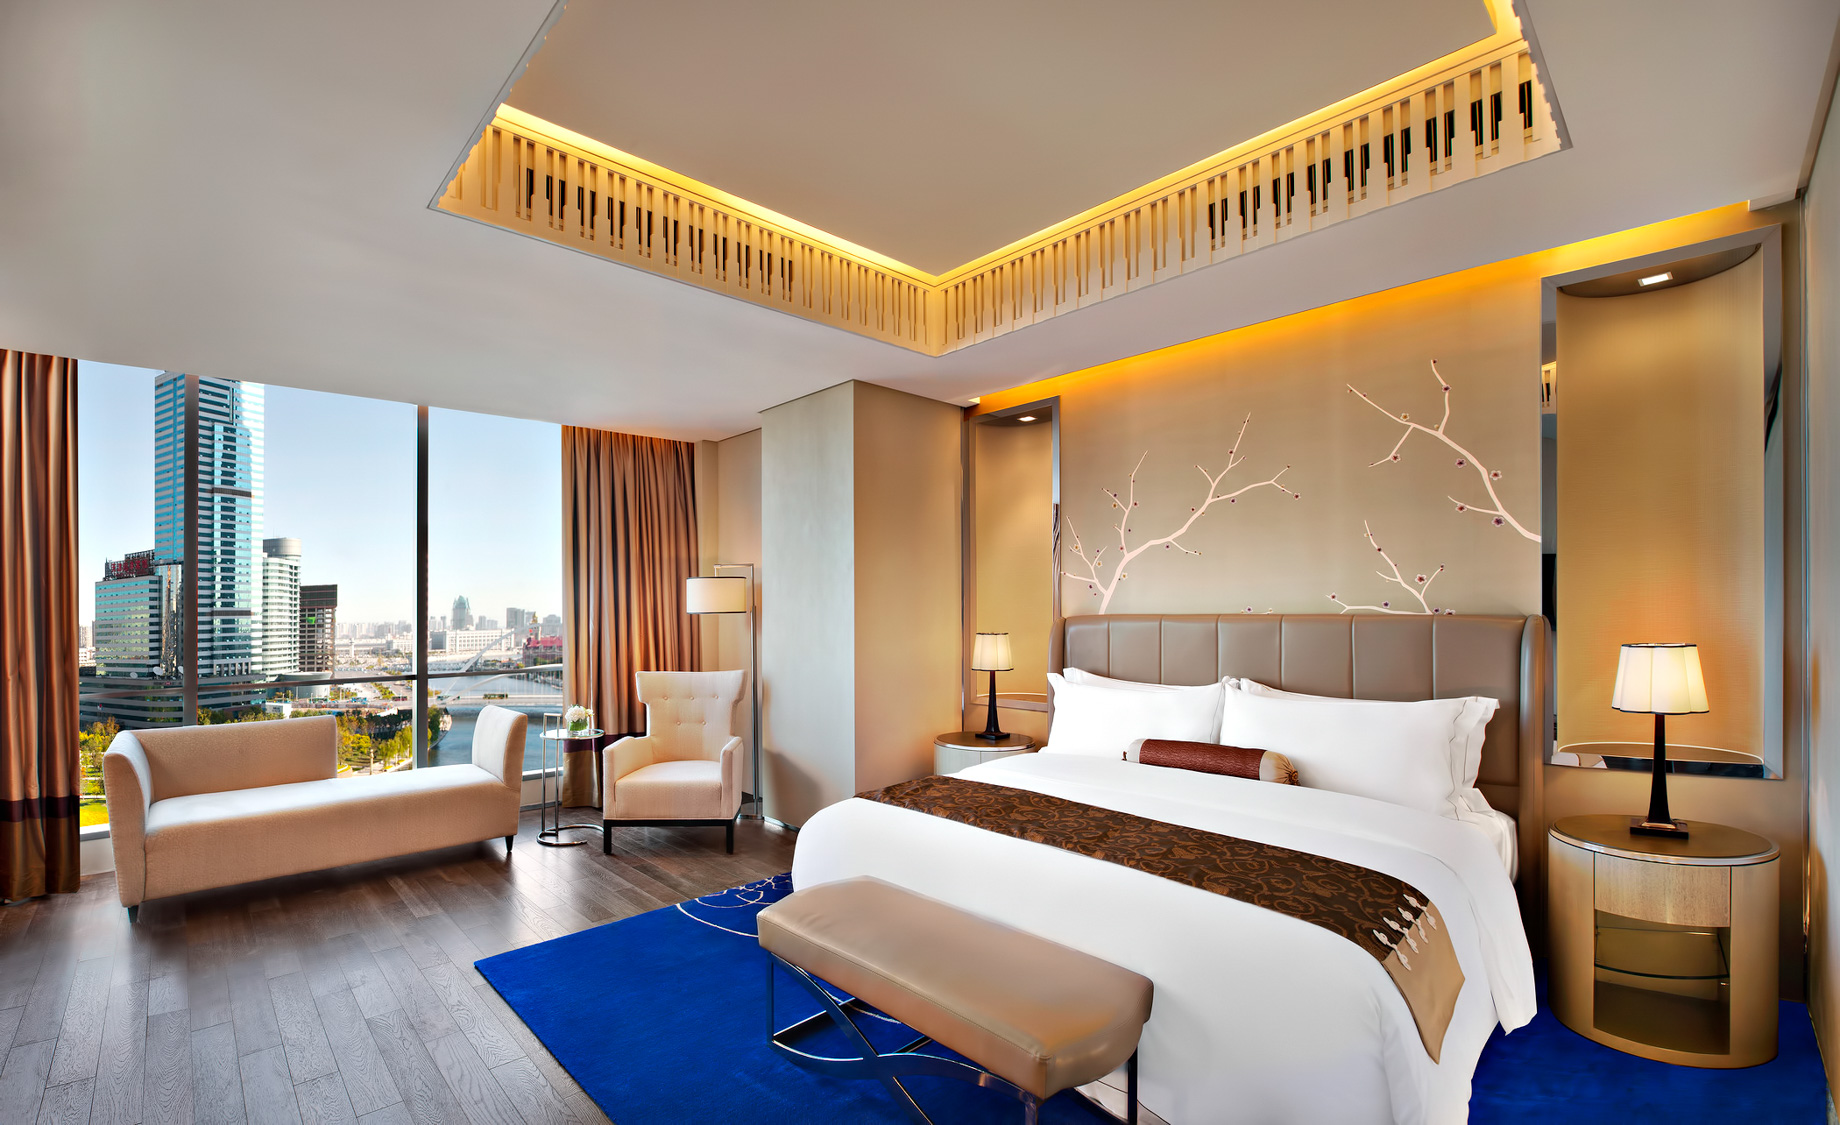 The St. Regis Tianjin Hotel – Tianjin, China – St. Regis Suite Bedroom